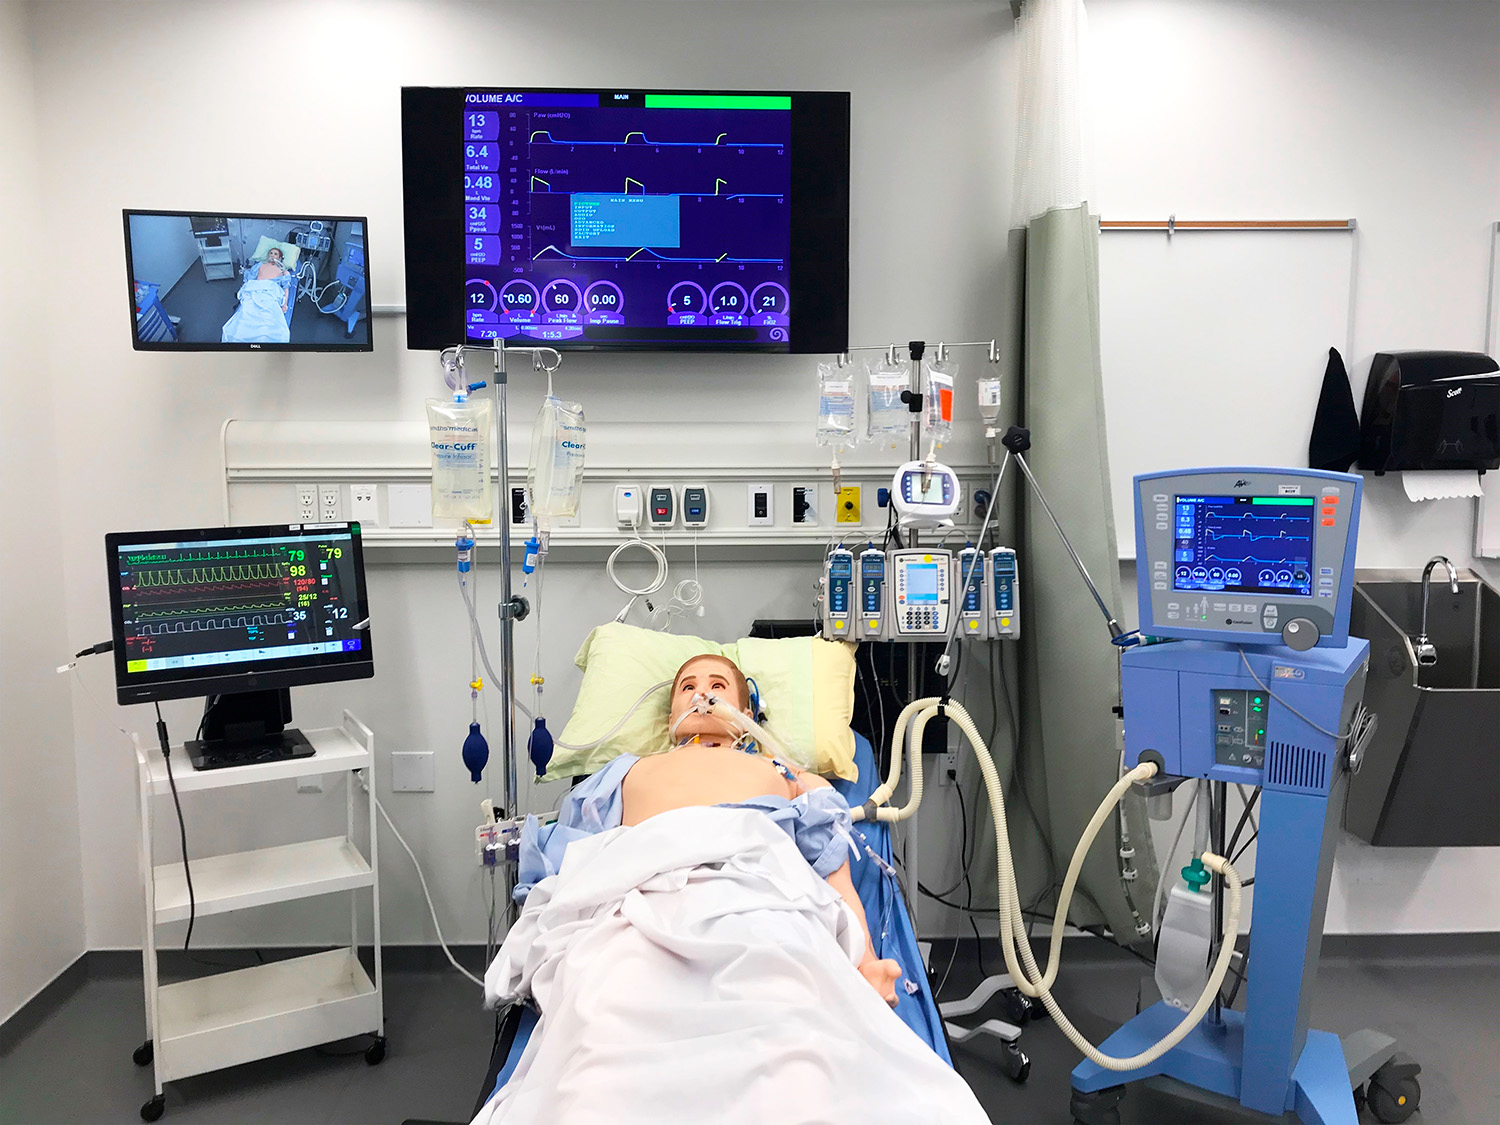 Las estaciones de cama del laboratorio disponen de numeroso equipamiento AV y médico y un simulador de paciente humano con capacidades AV interactivas.